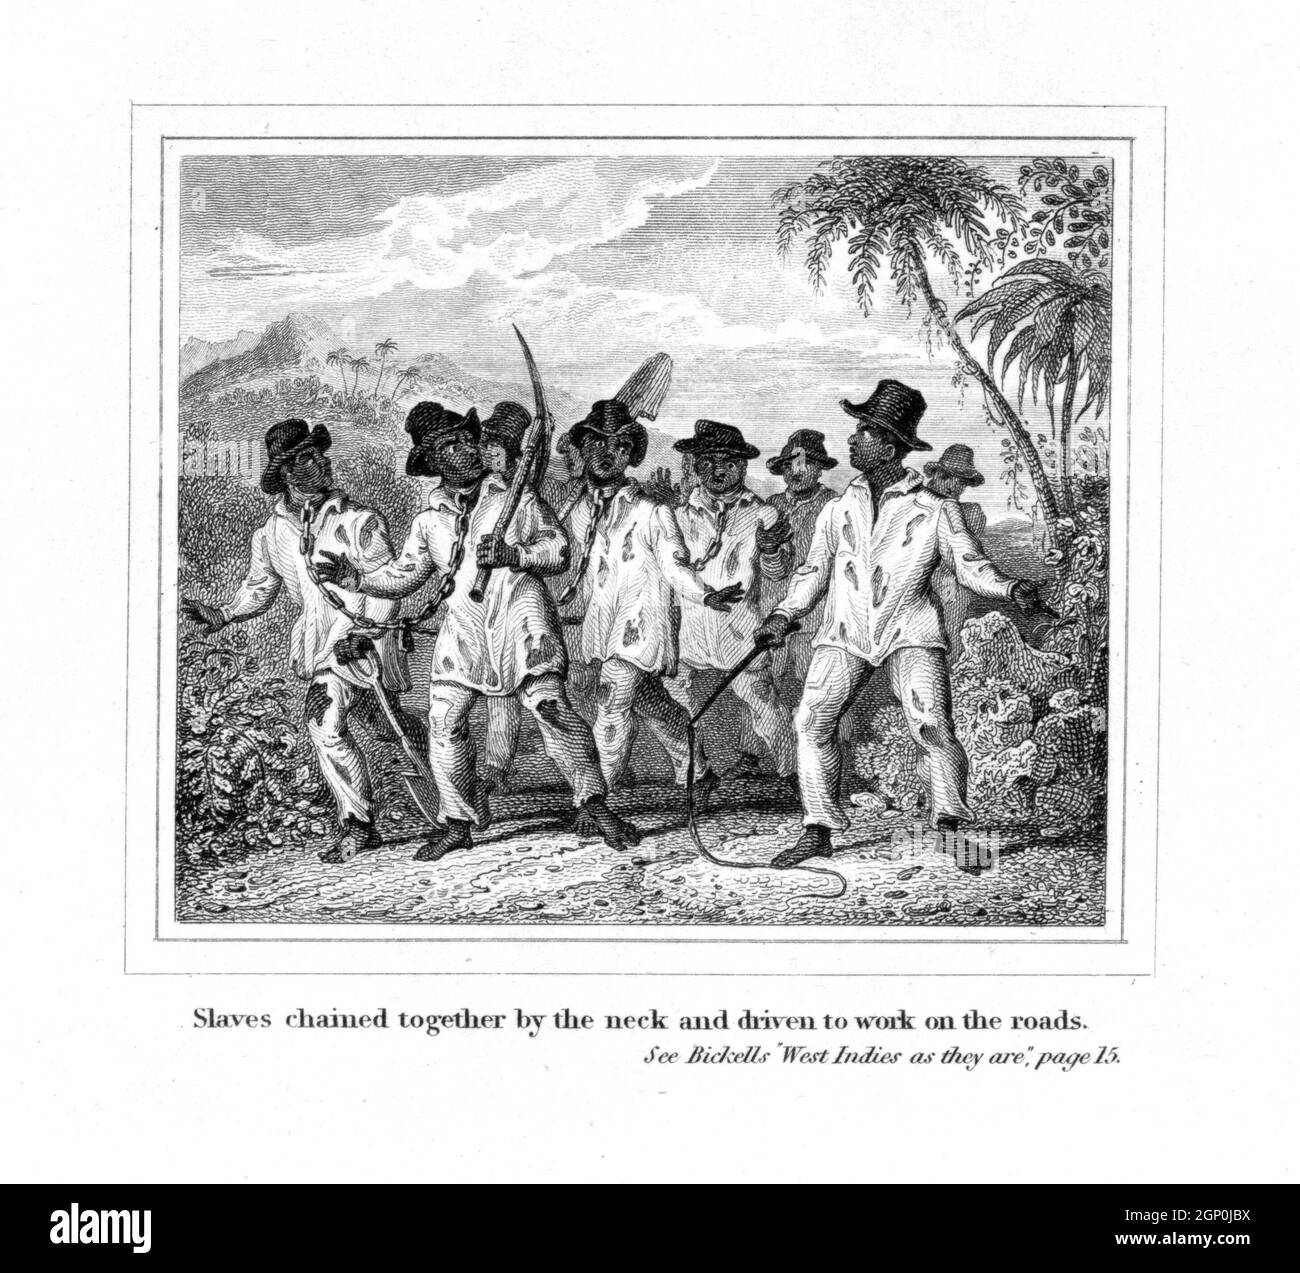 Ilustración vintage de alrededor de 1825 titulada 'esclavos encadenados por el cuello y conducidos a trabajar en las carreteras'. Muestra que los hombres jamaiquinos están siendo forzados a trabajar en cadenas, mientras que un maestro esclavo sostiene un látigo en una plantación en las Indias Occidentales. Publicado en las Indias Occidentales como son; o, una imagen real de la esclavitud, por el Reverendo Richard Bickell Foto de stock